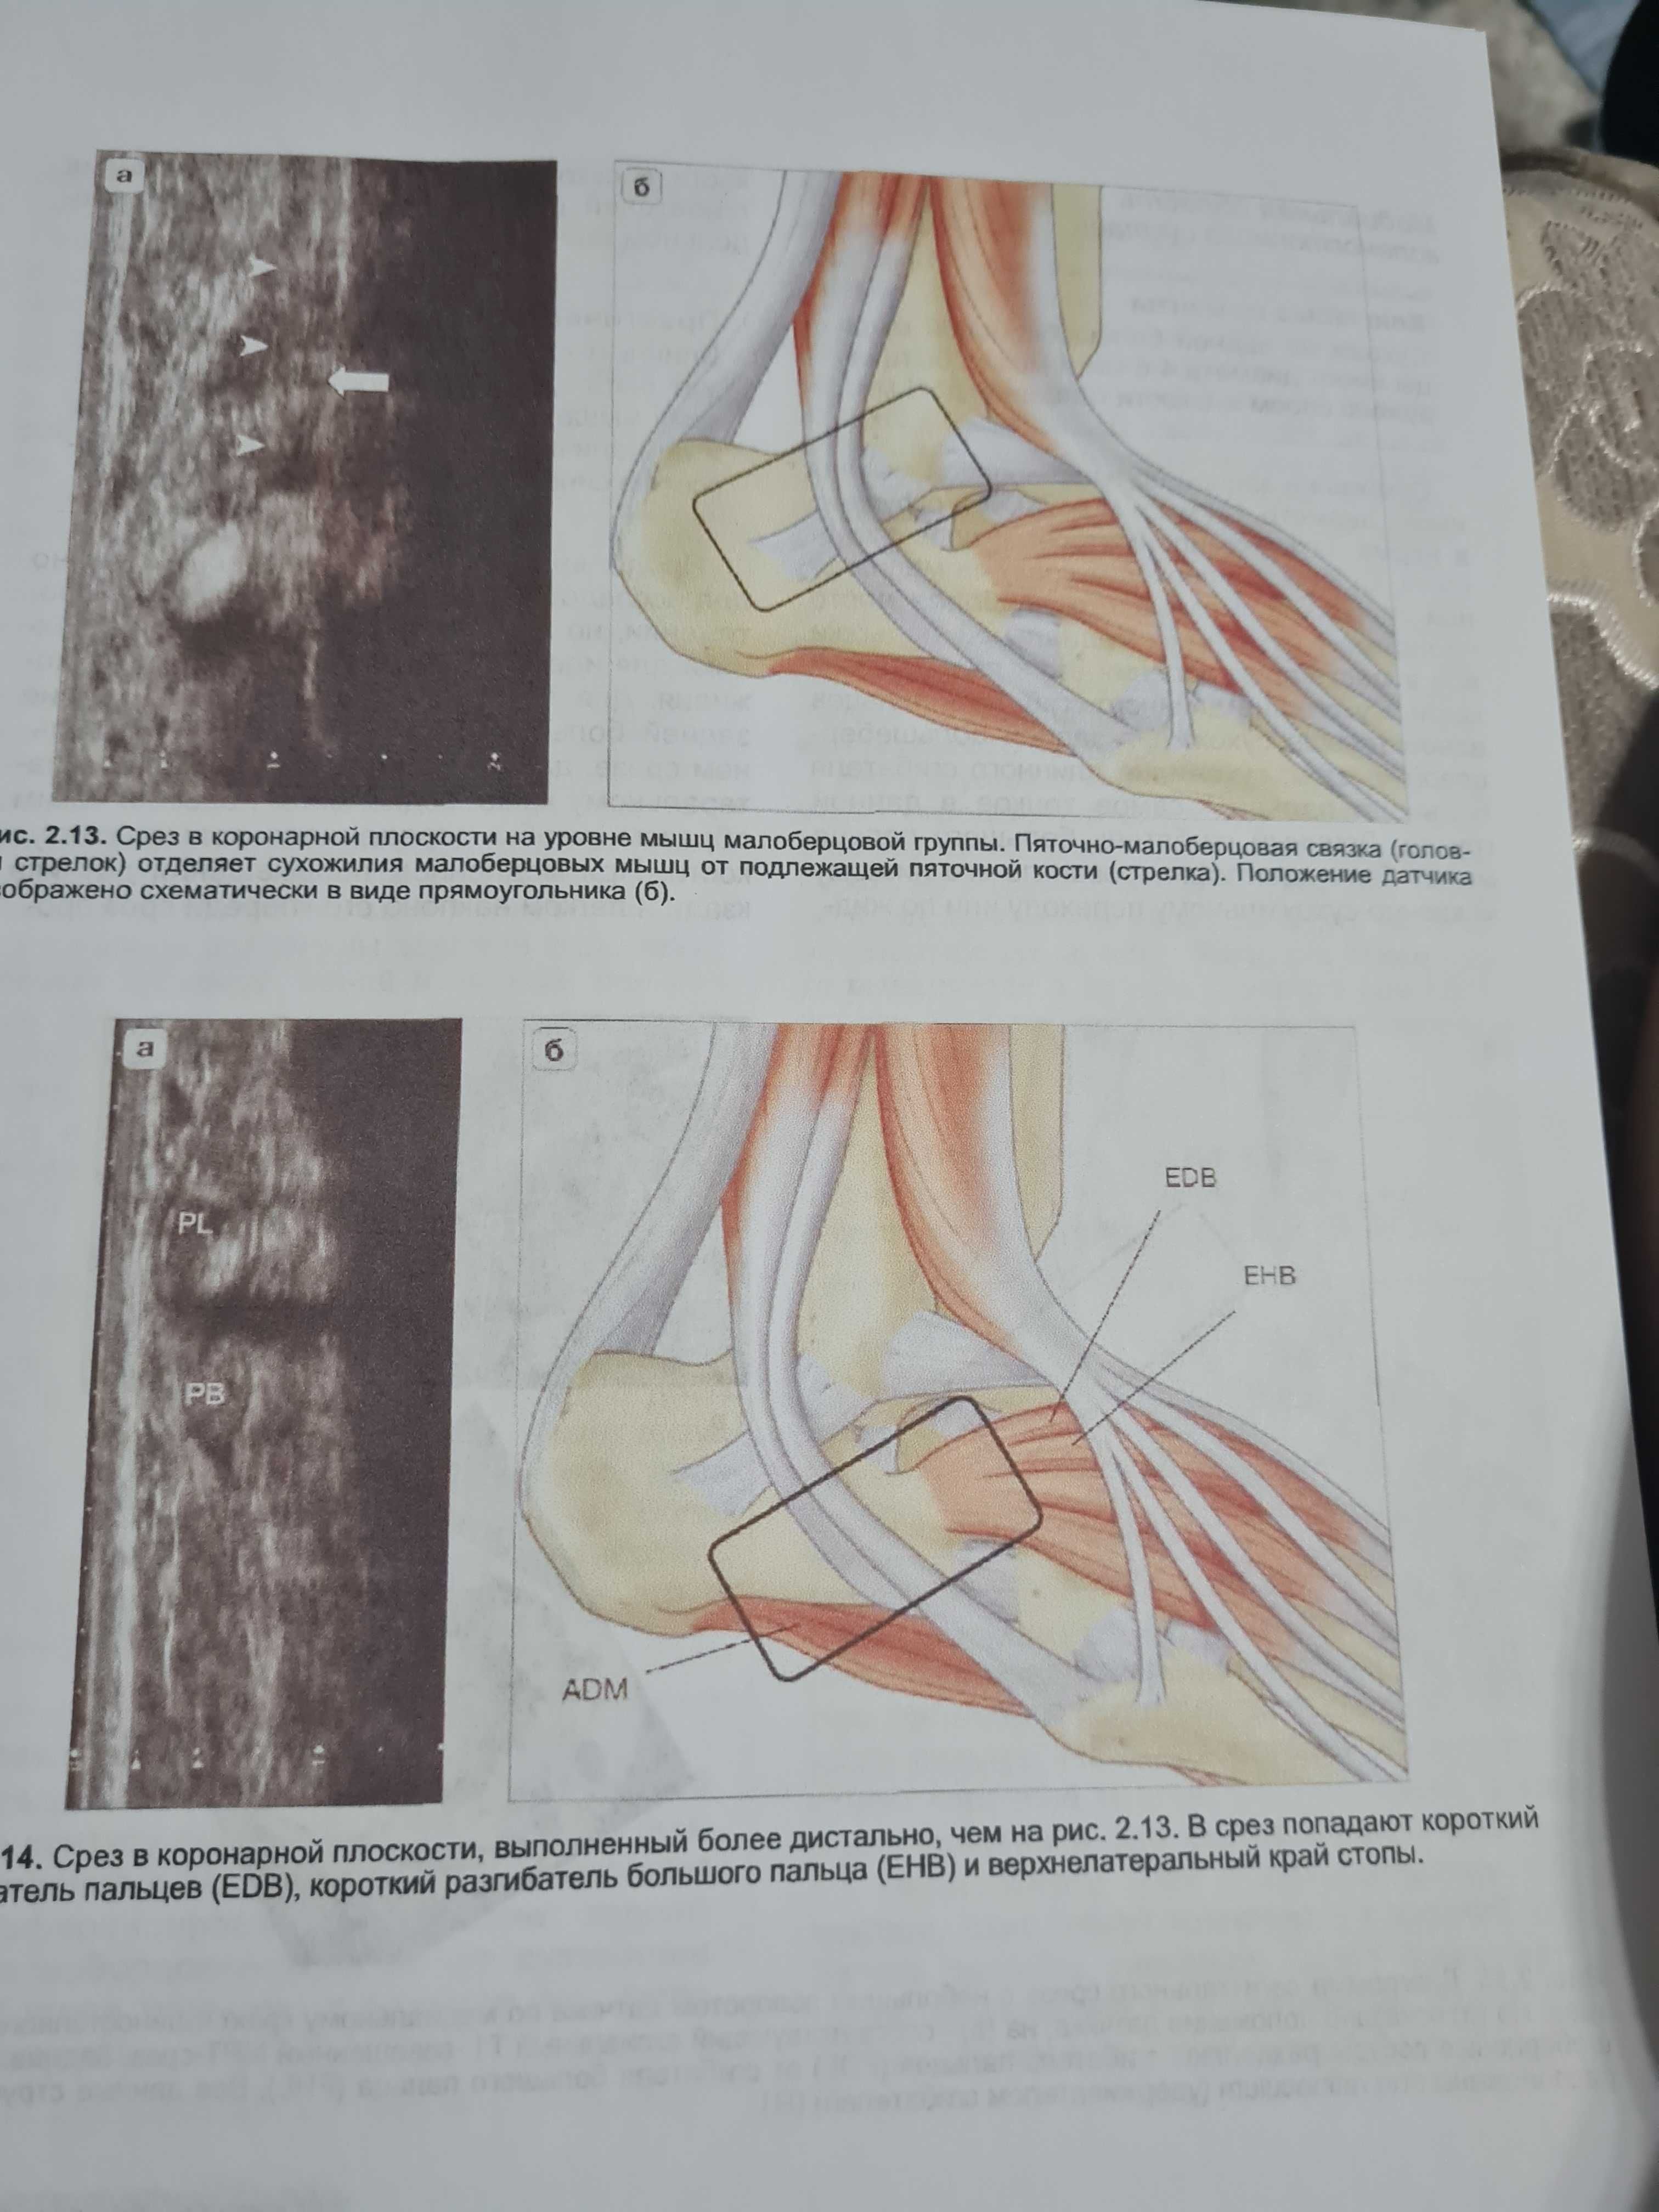 Ультразвуковые исследования костно-мышечной системы автор МакНелли